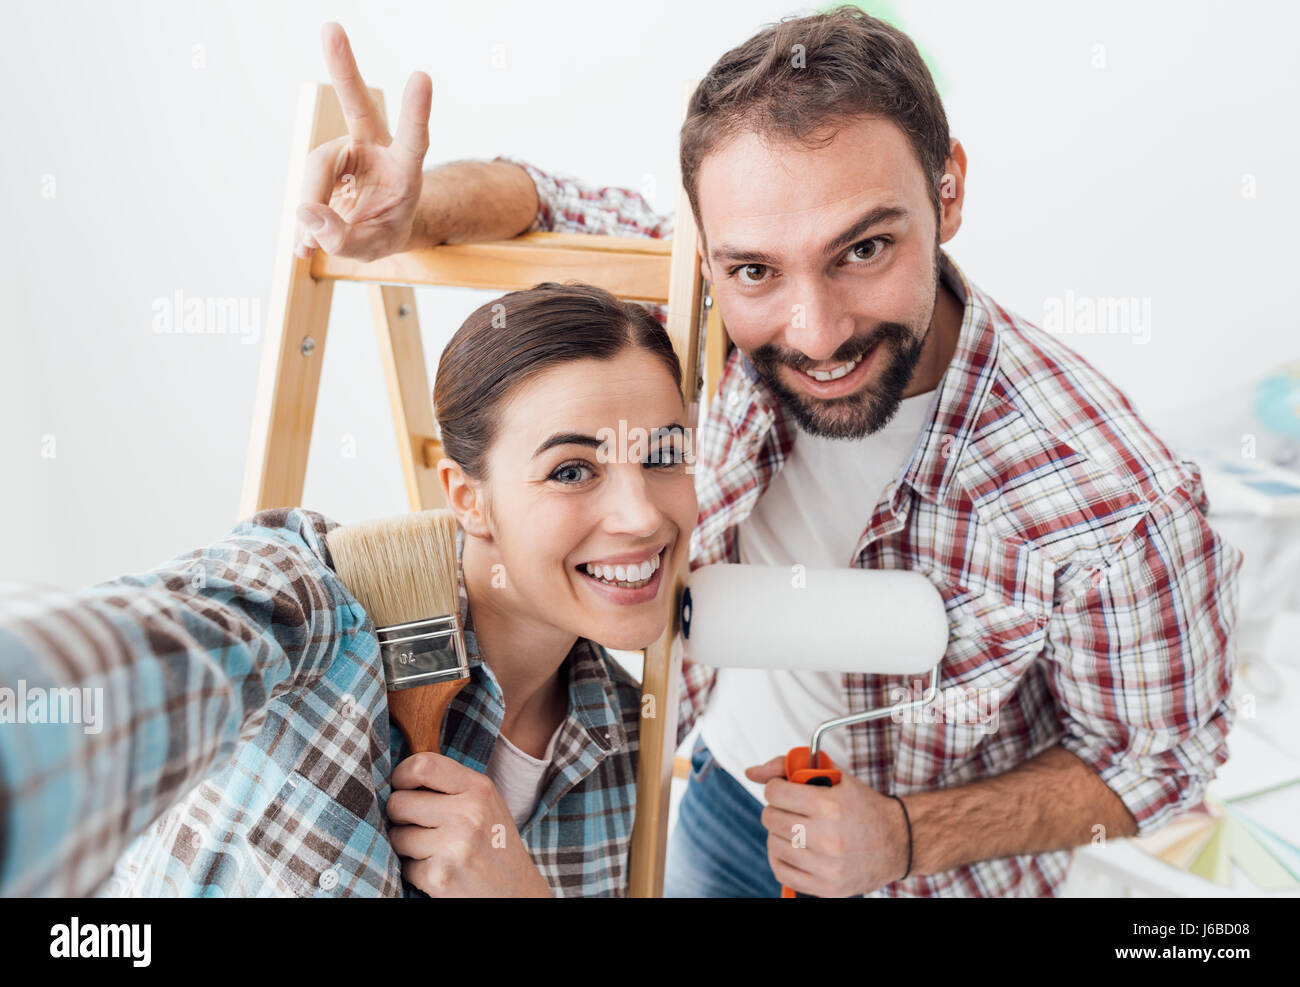 Kreative junge Paar renovieren ihr Haus und Malerei Wände, sie nehmen ein Selbstporträt zusammen und lächelt in die Kamera Stockfoto